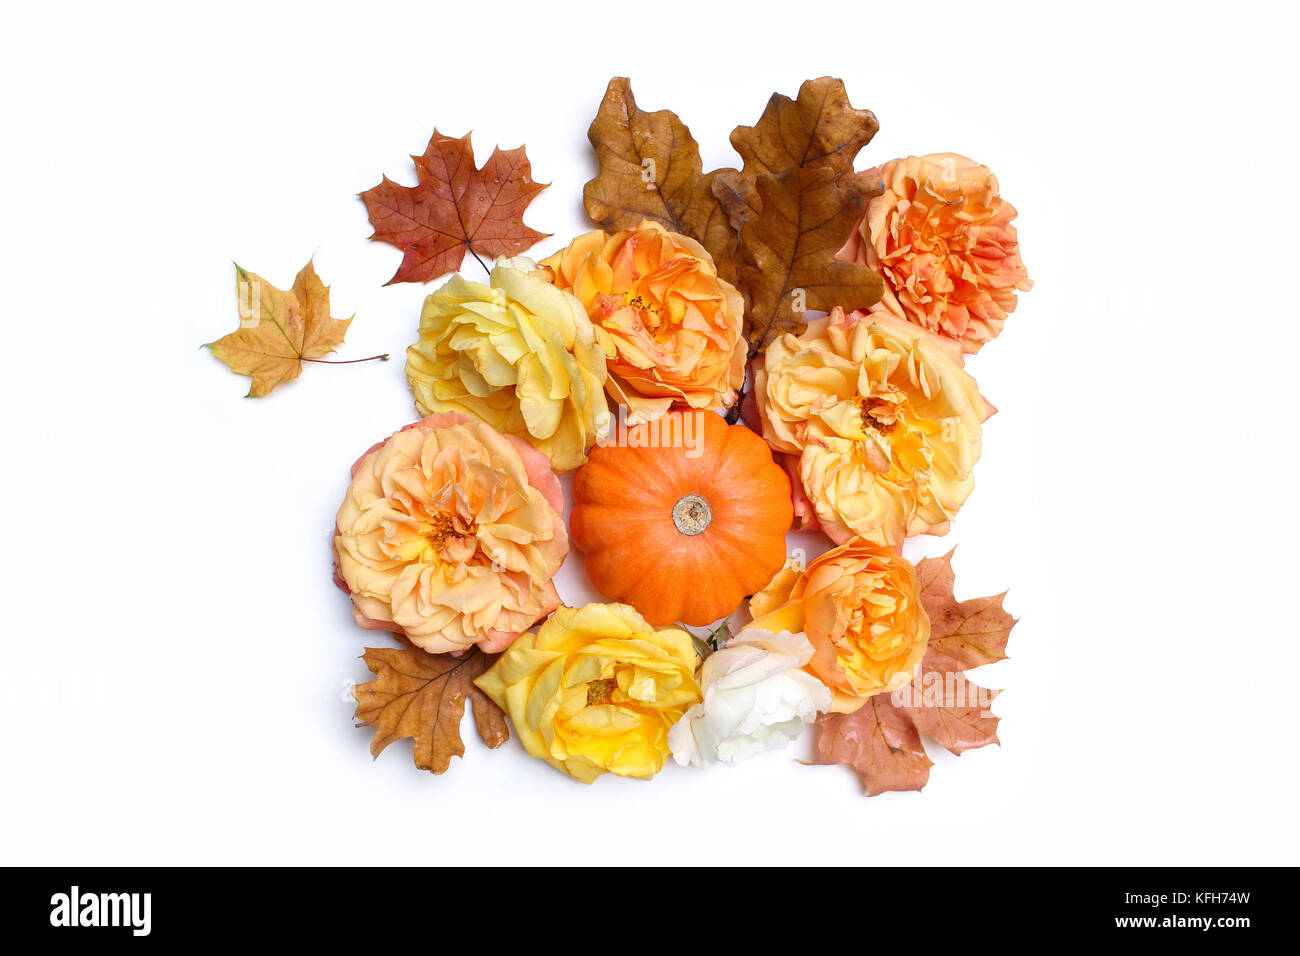 Herbst blumige Komposition aus bunten Ahorn, Eiche Blätter, orange Kürbis und Ausbleichen Rosen auf weißem Hintergrund. fallen und Danksagung Konzept. eingerichteten Lager flach Fotografie legen. Ansicht von oben. Stockfoto